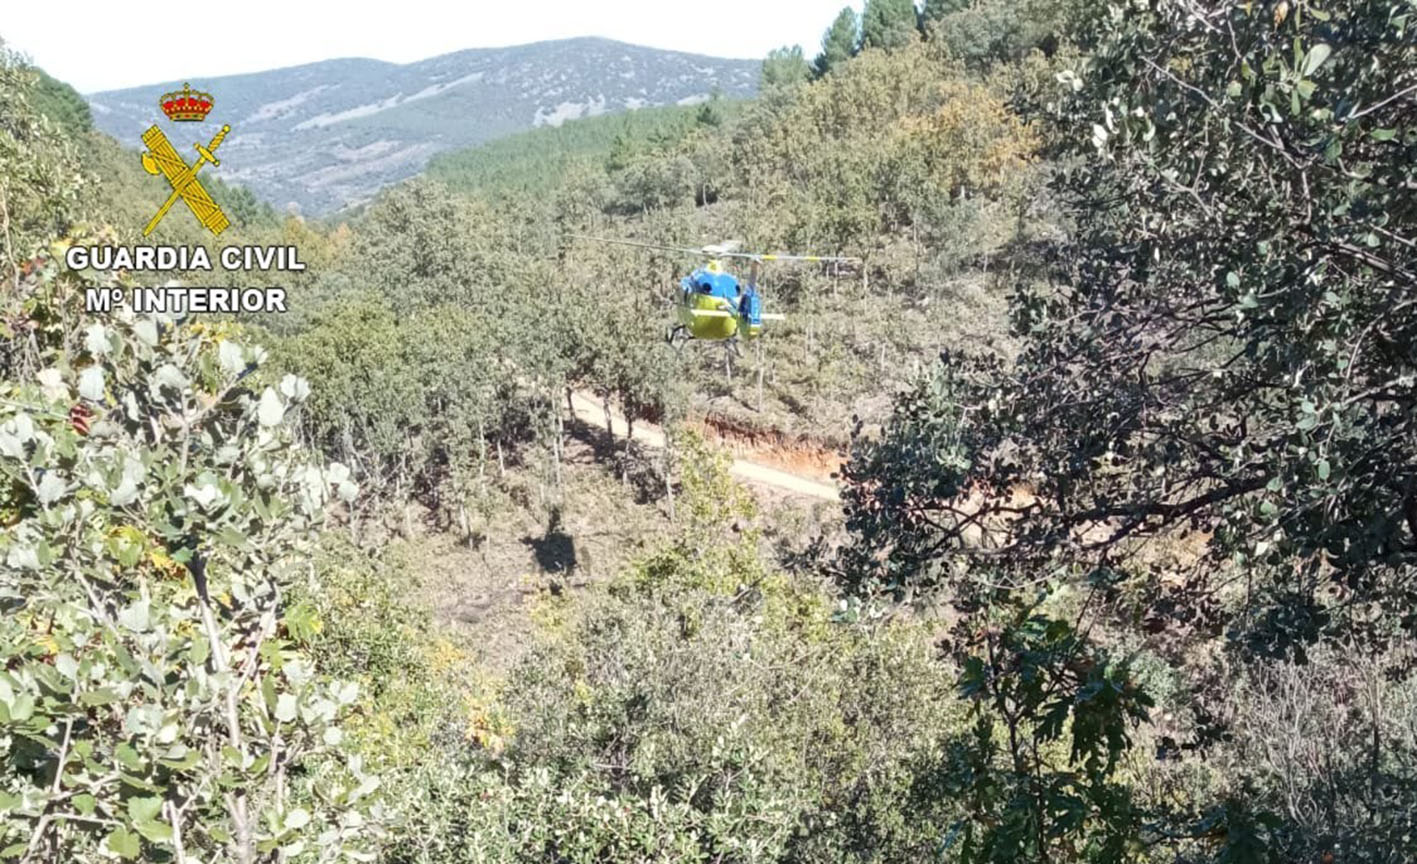 El helicóptero medicalizado, buscando un lugar donde aterrizar.